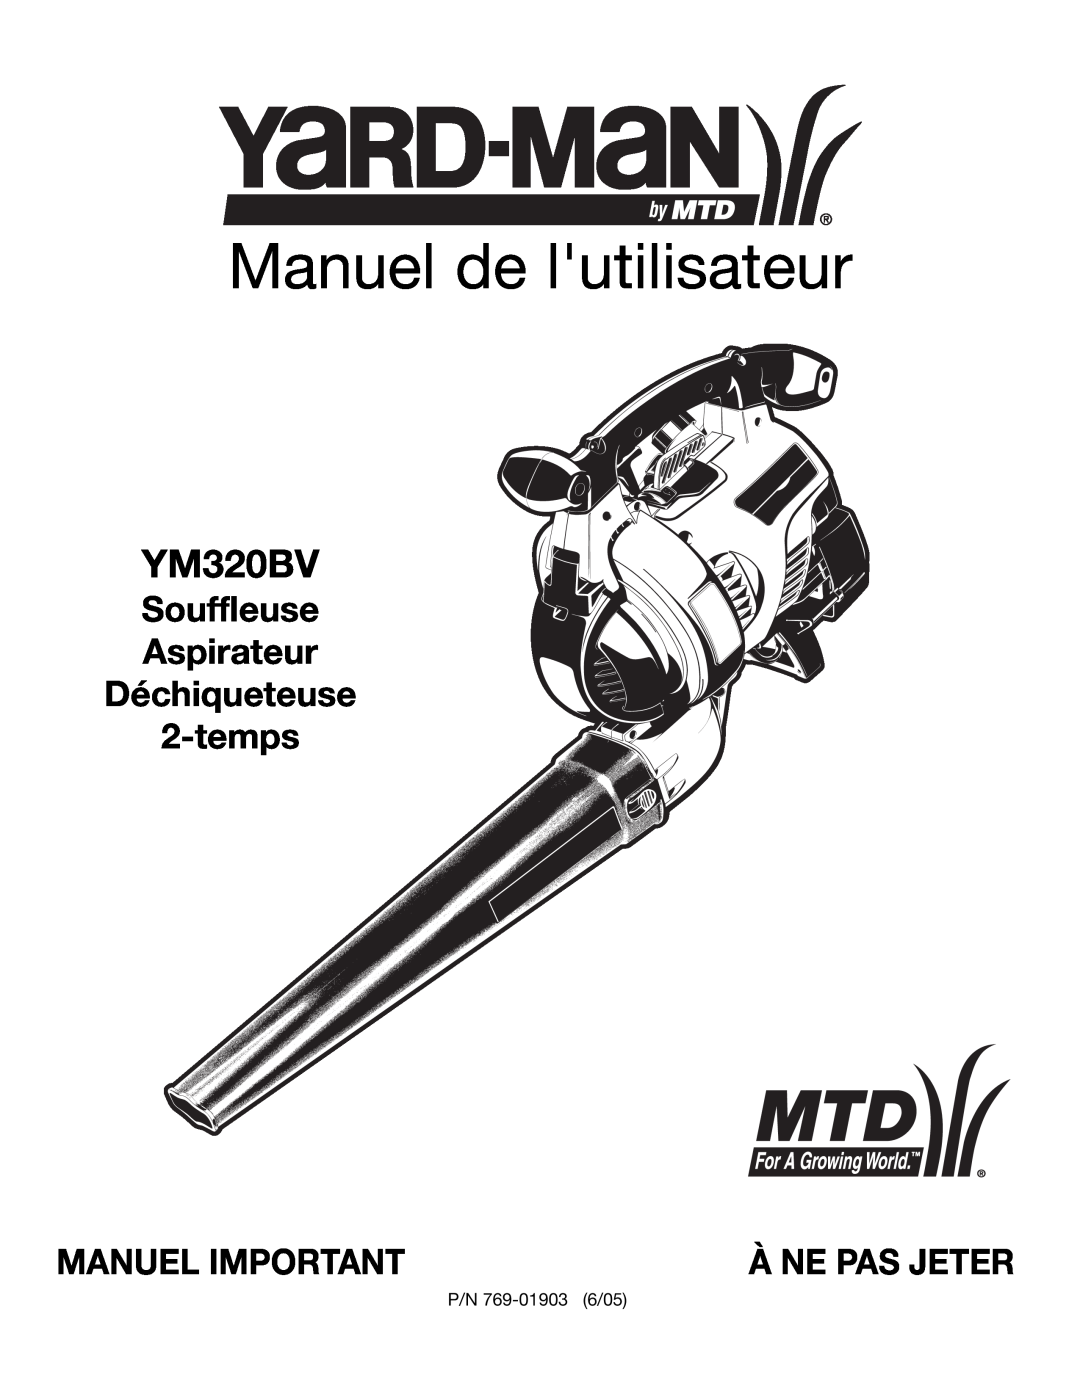 Bolens YM320BV manual Manuel de lutilisateur, Souffleuse Aspirateur Déchiqueteuse 2-temps, Manuel Important, À Ne Pas Jeter 